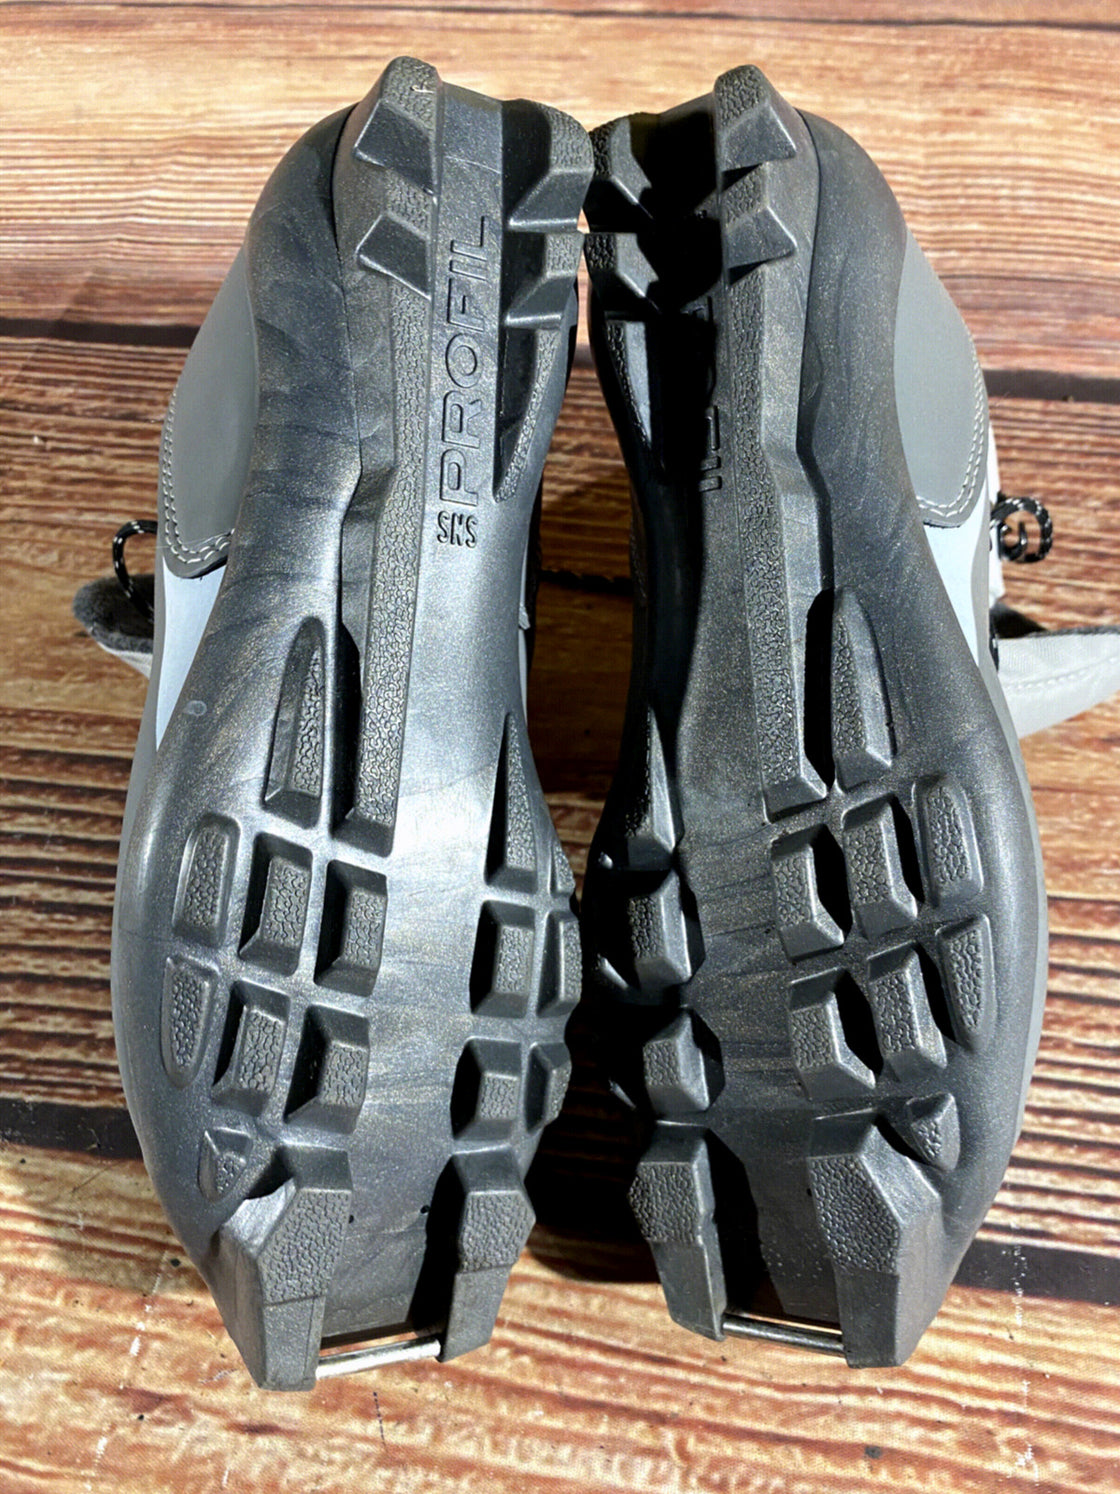 Salomon Siam 5 Nordic Cross Country Ski Boots Size EU38 US6.5 for SNS Profil